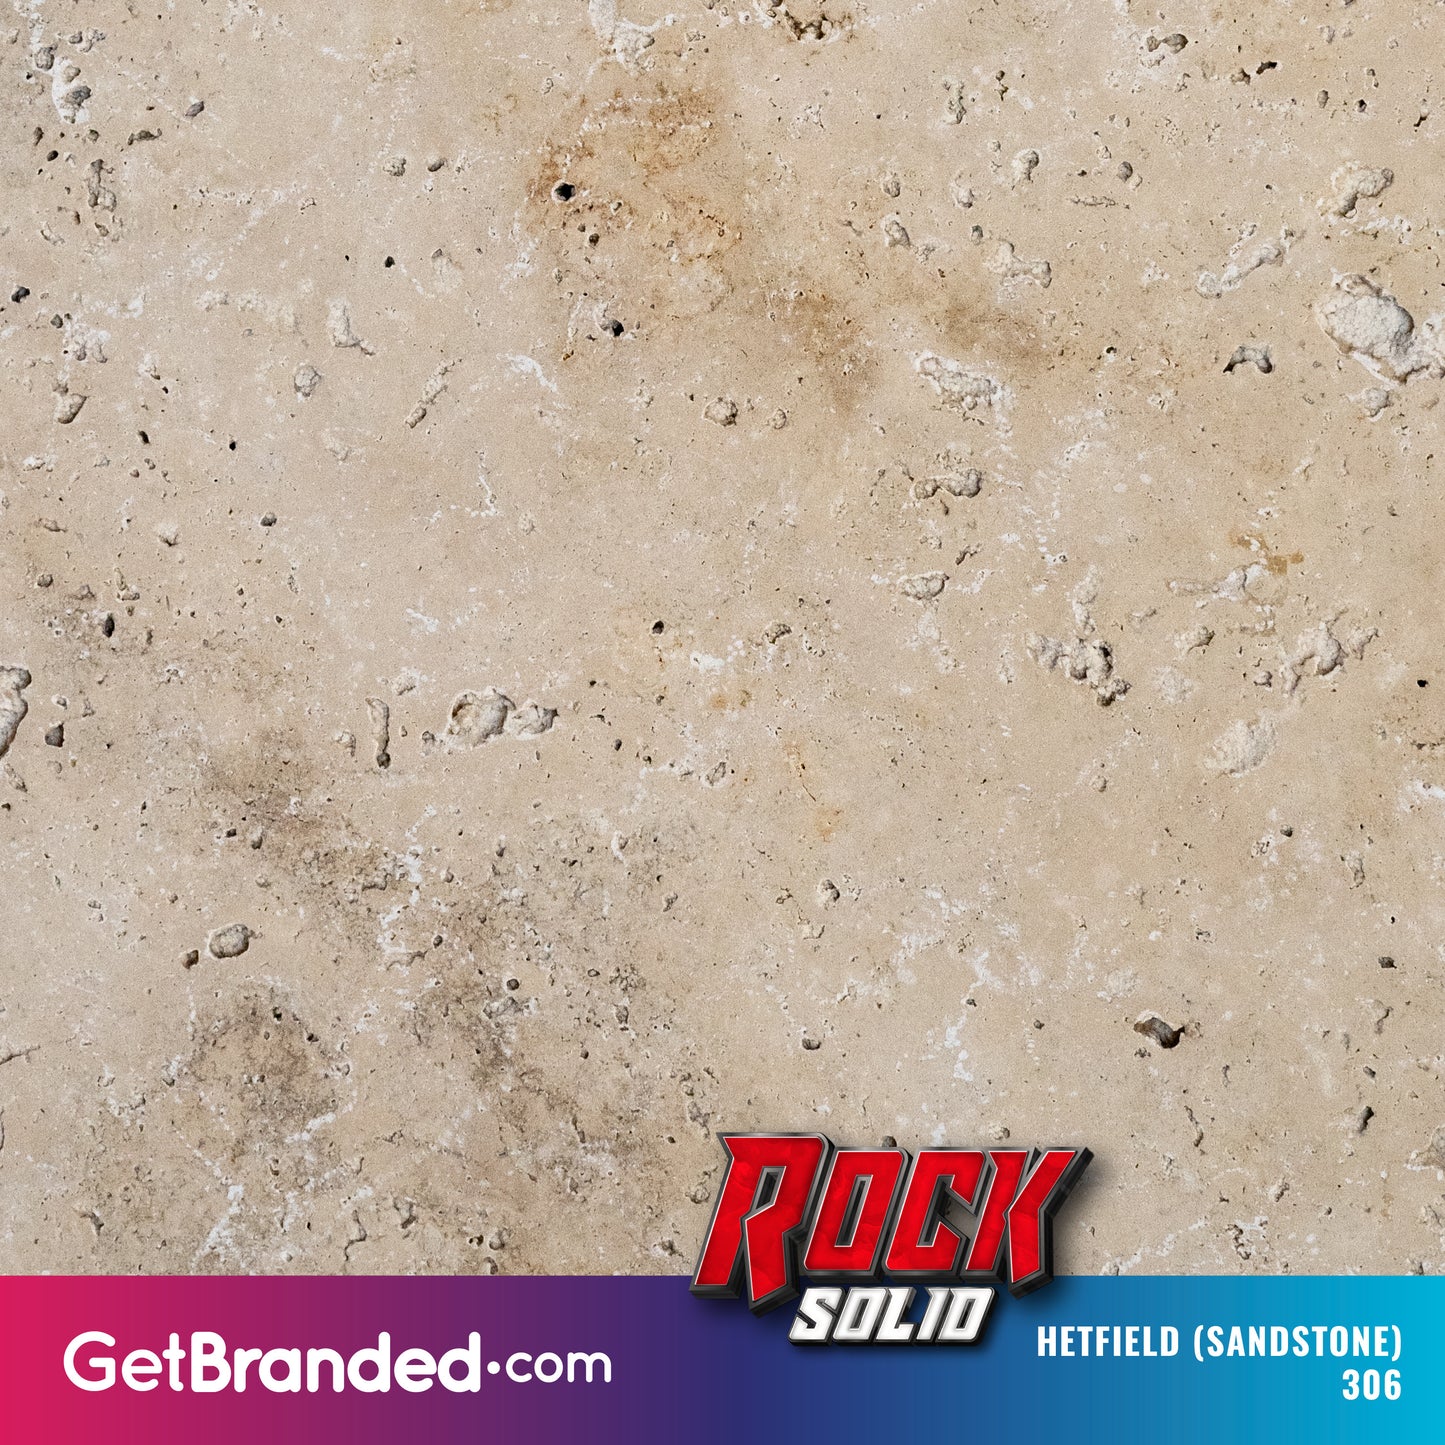 Hetfield Sandstone RockSolid™ Wrap Pattern Image.